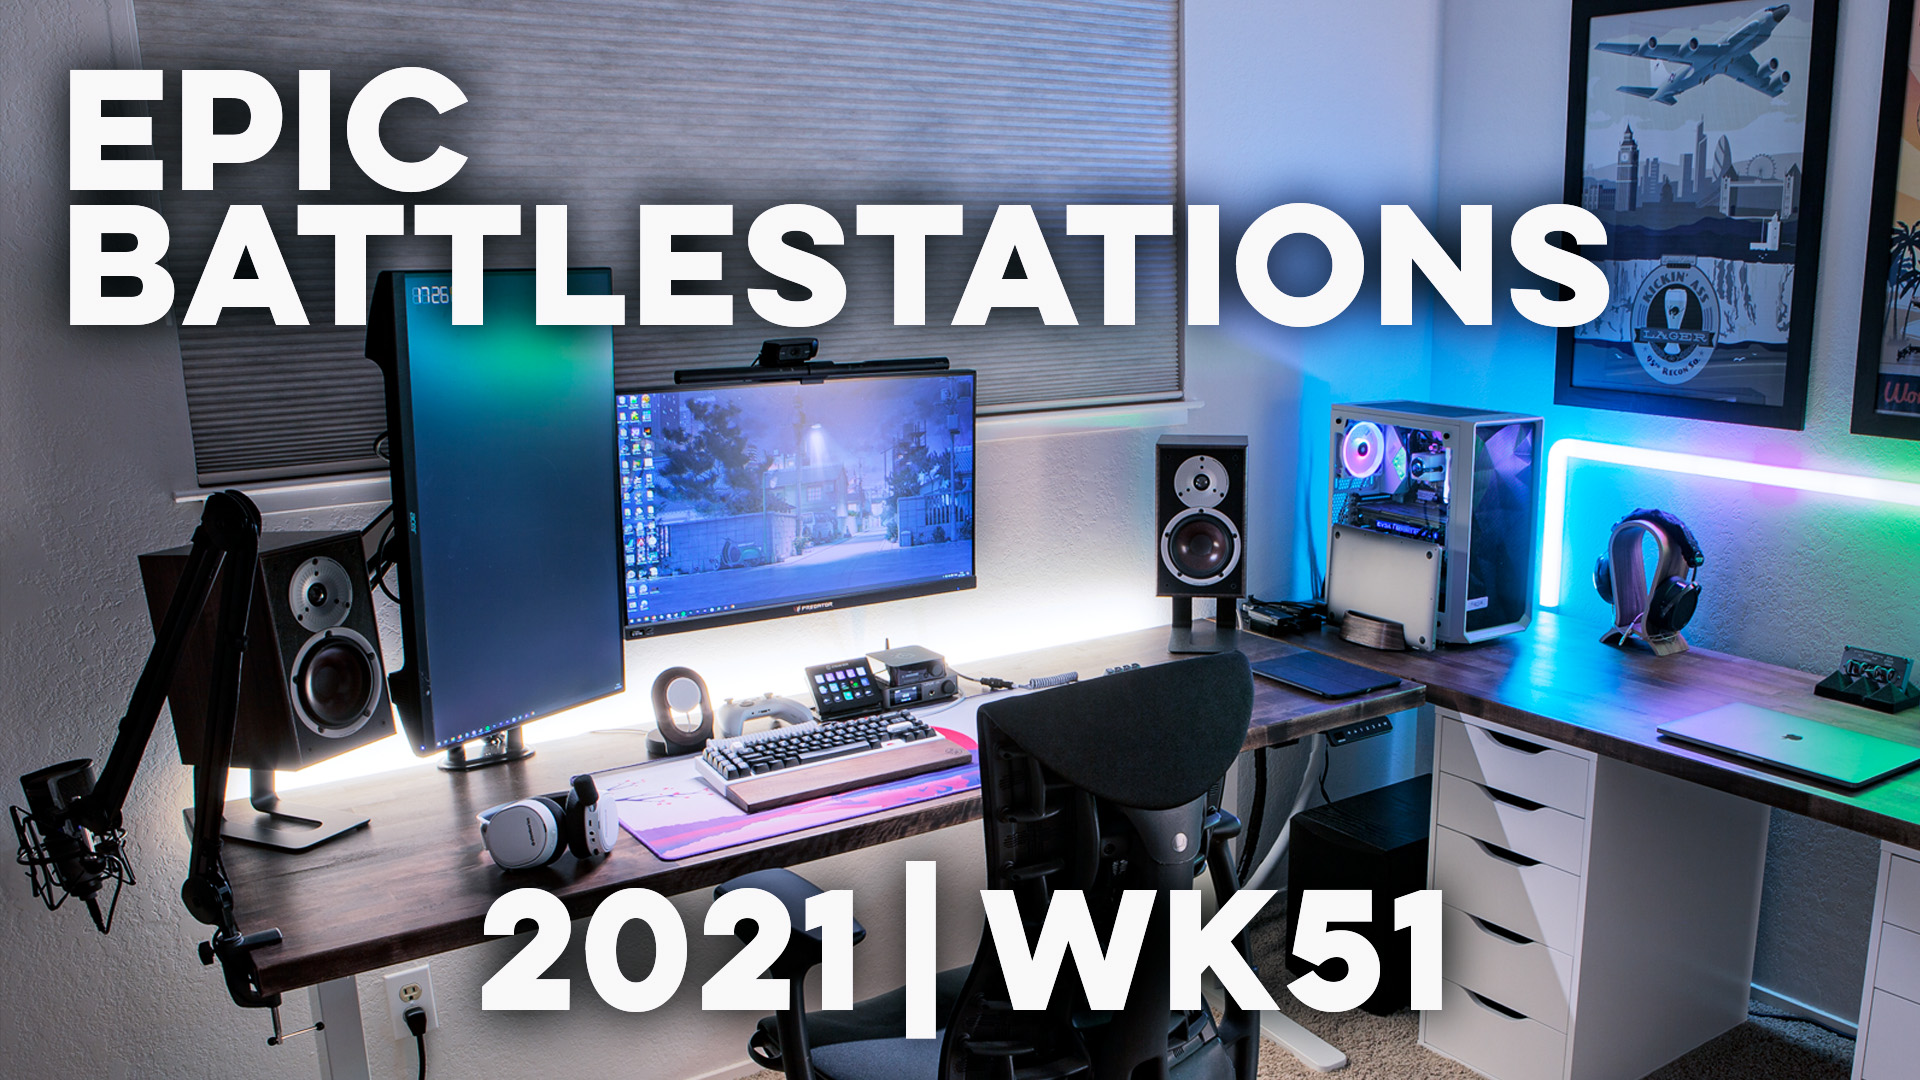 Top 10 EPIC Battlestations for 2021 Week 51!